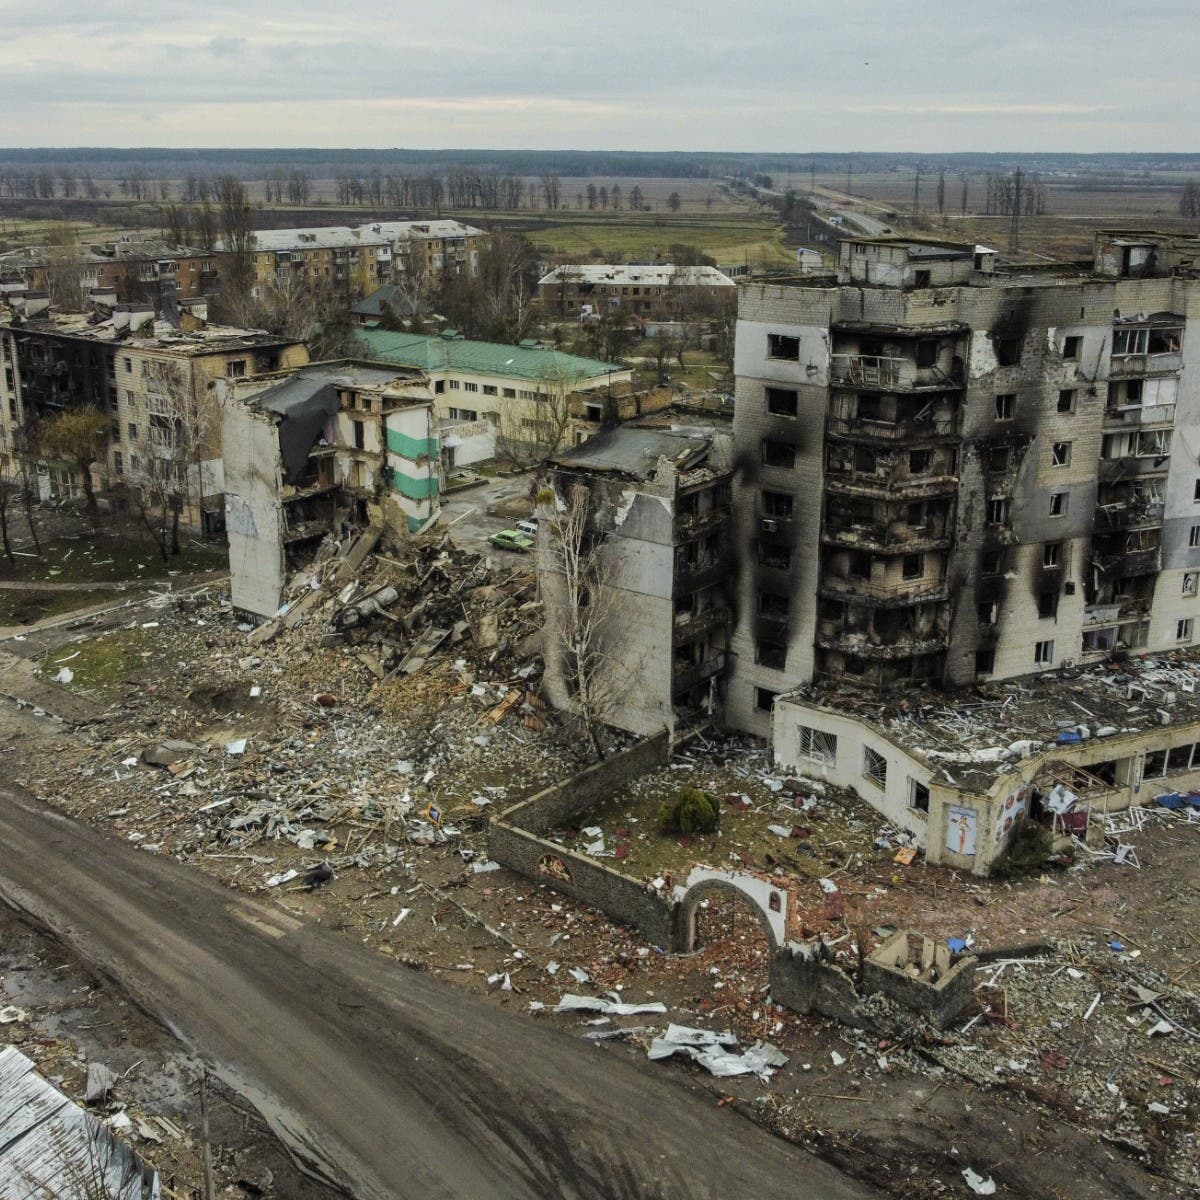 البنتاغون يكشف عن الأسلحة المرسلة لكييف.. وبايدن: ما يحدث بأوكرانيا "إهانة للبشرية"